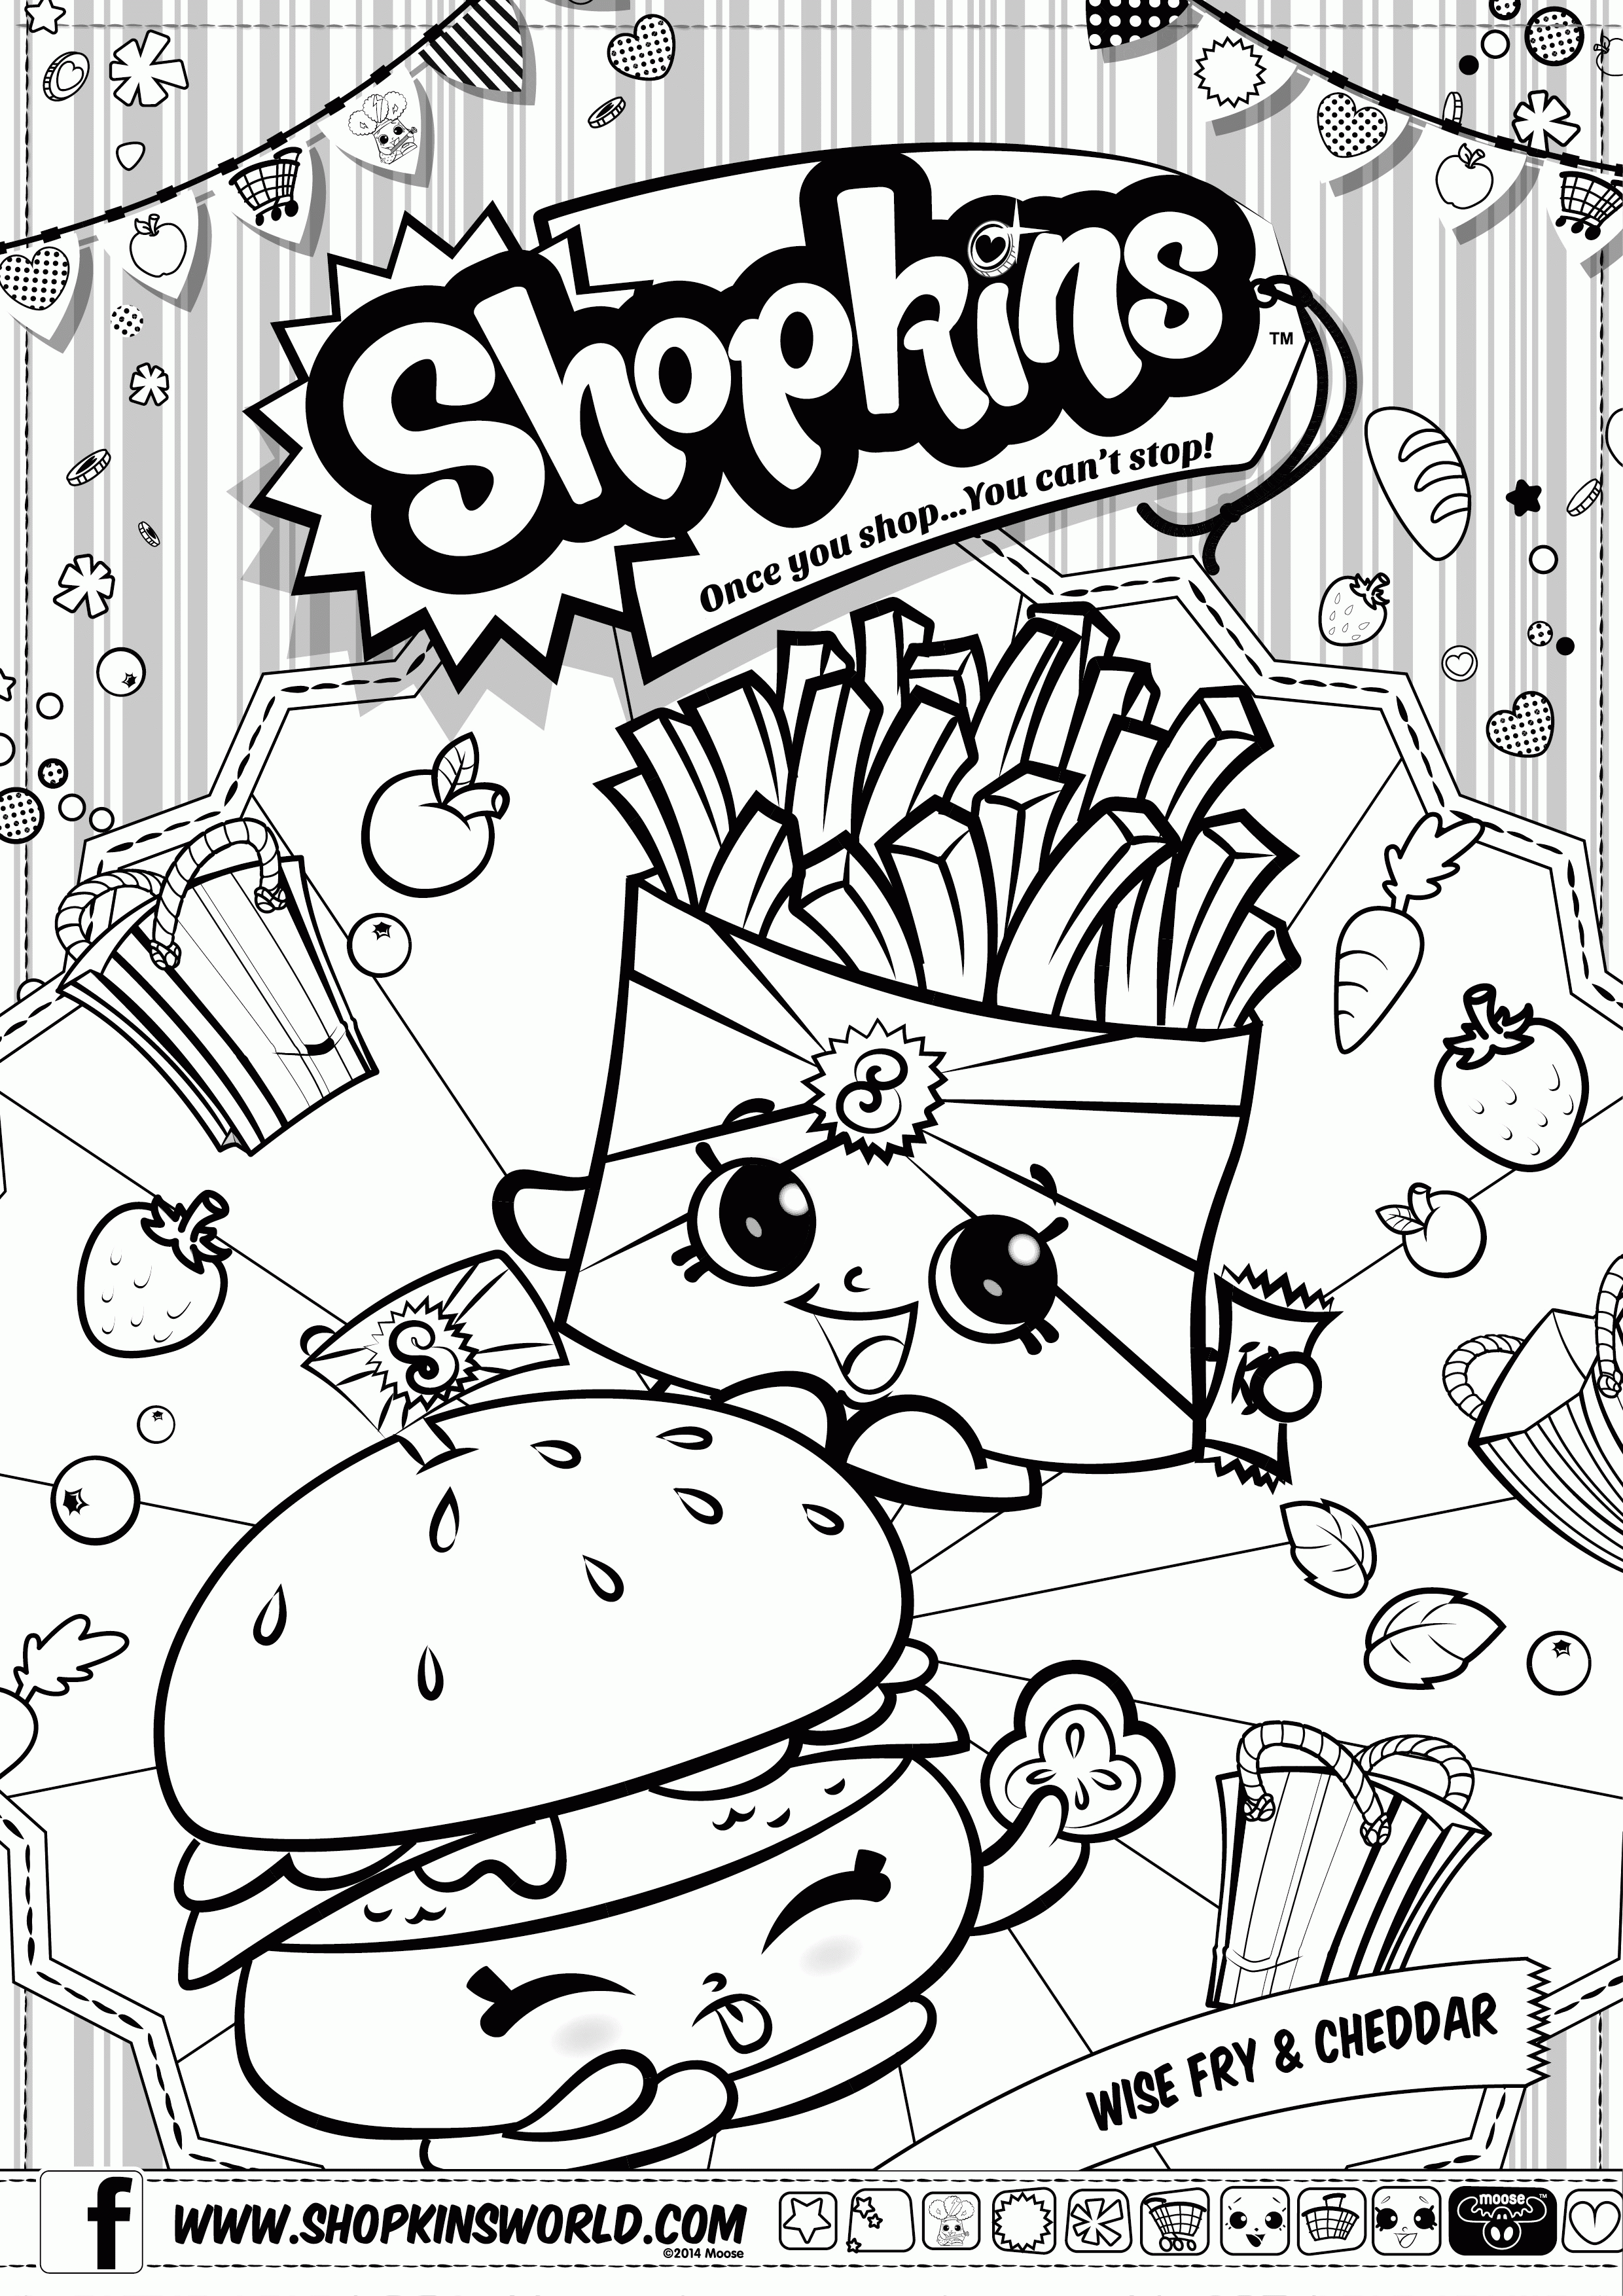 Shopkins - Official Site